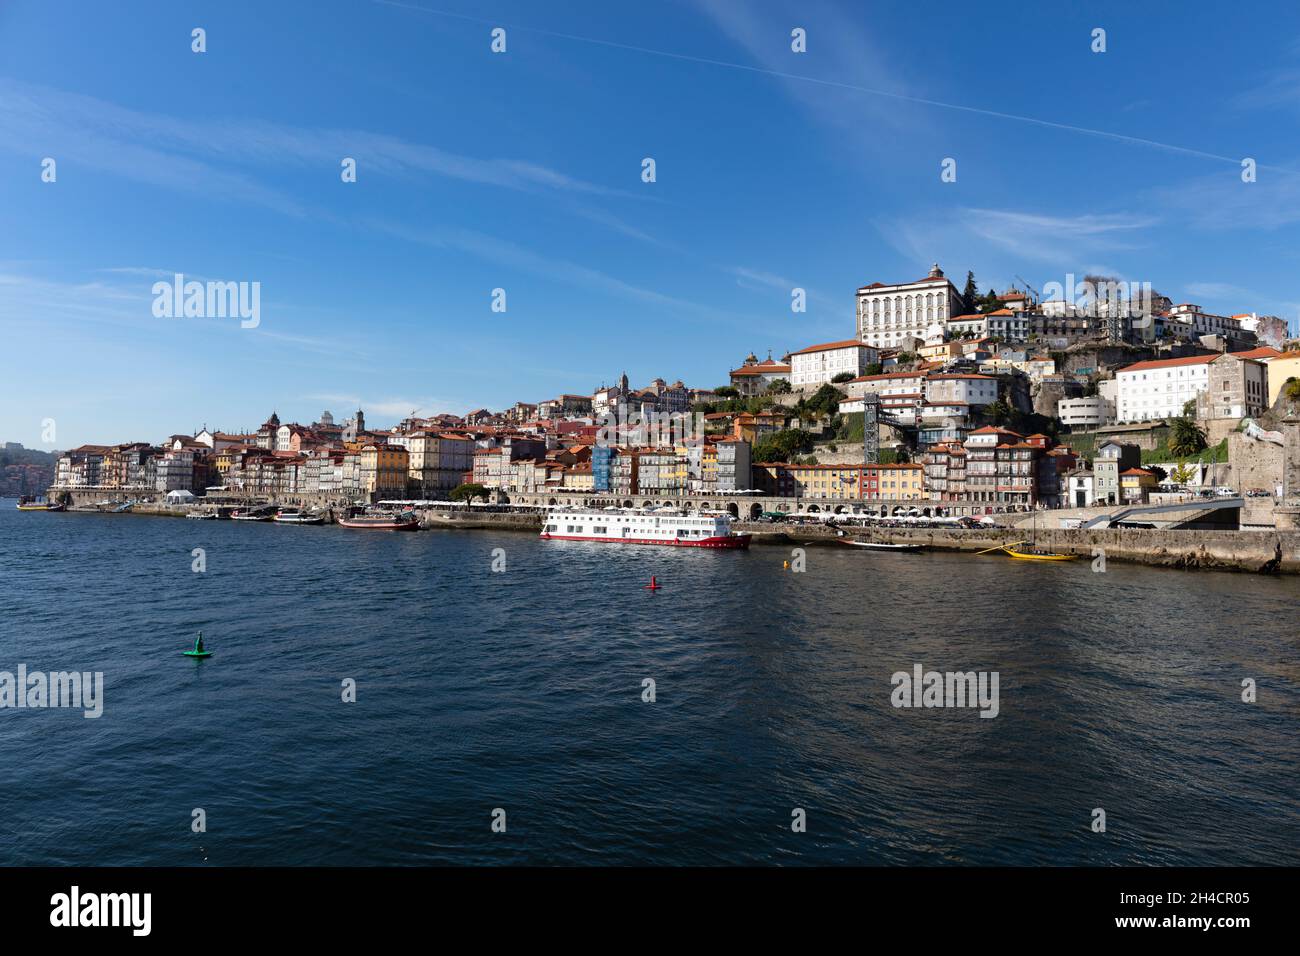 Panoramablick auf die Altstadt von Porto. Direkt zu sehen der Fluss Douro an den Porto liegt. Foto de stock